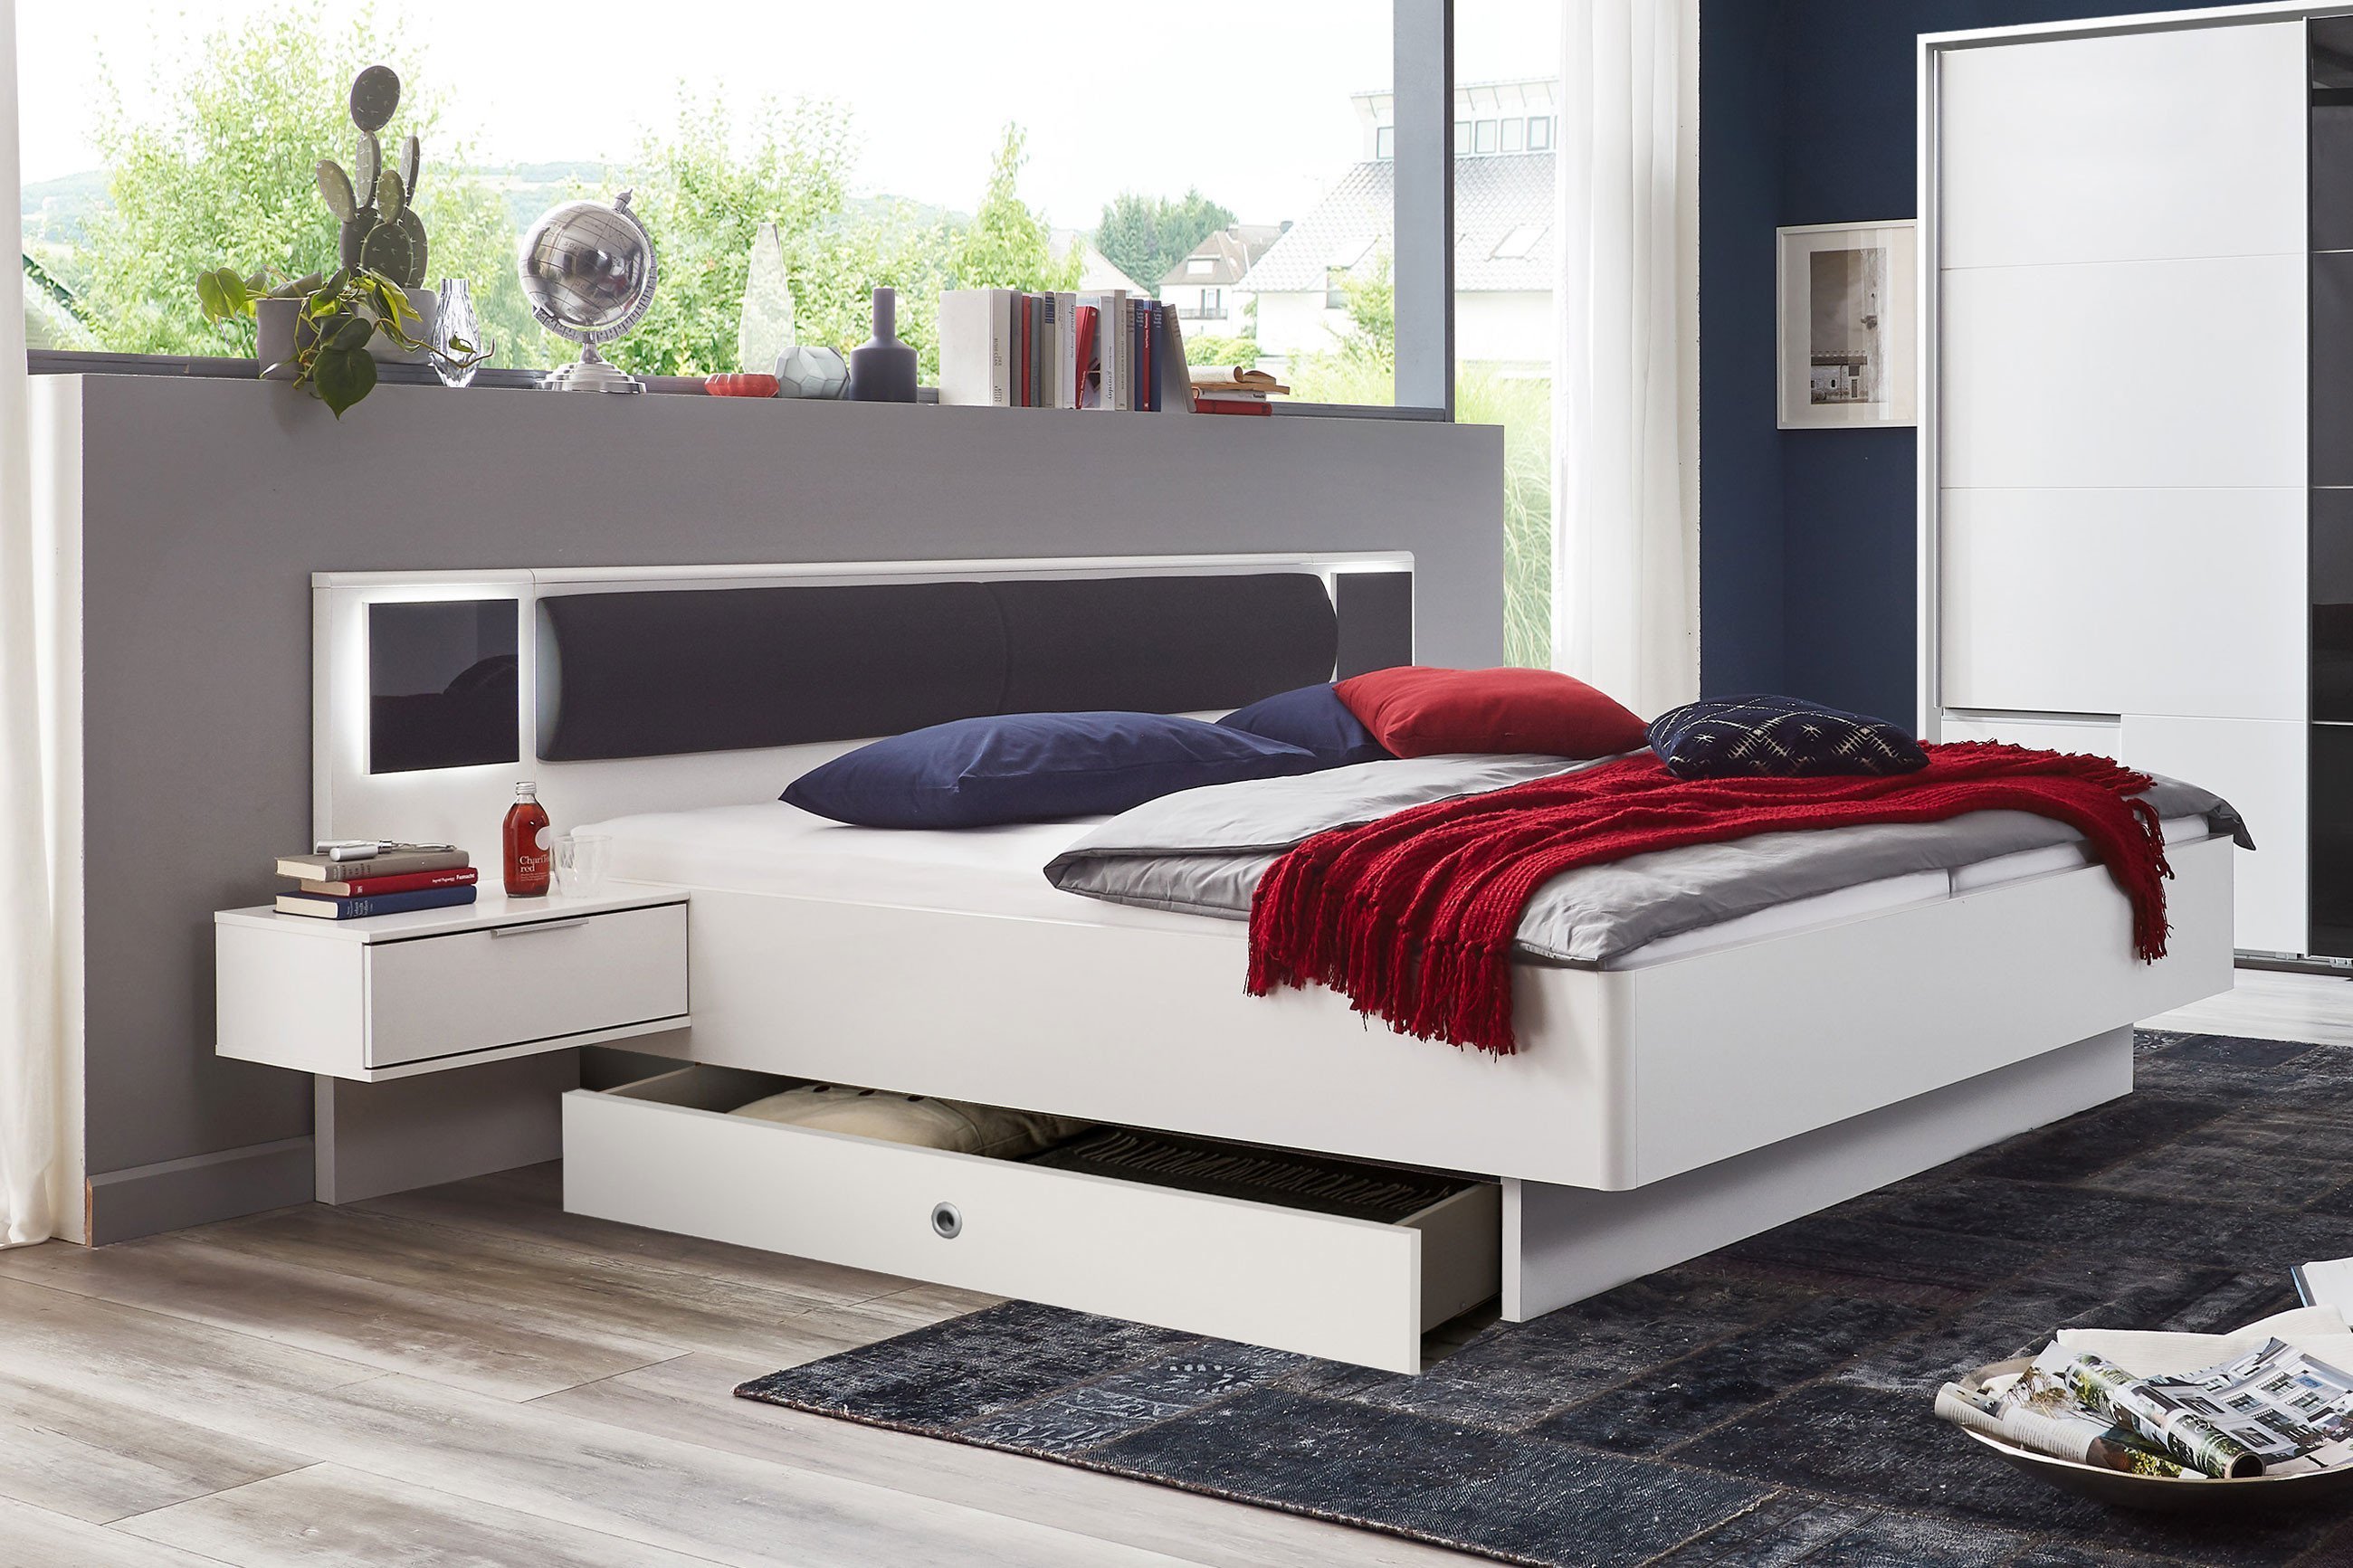 Wimex Schlafzimmer Valencia in Weiß mit grau | Möbel Letz - Ihr Online-Shop